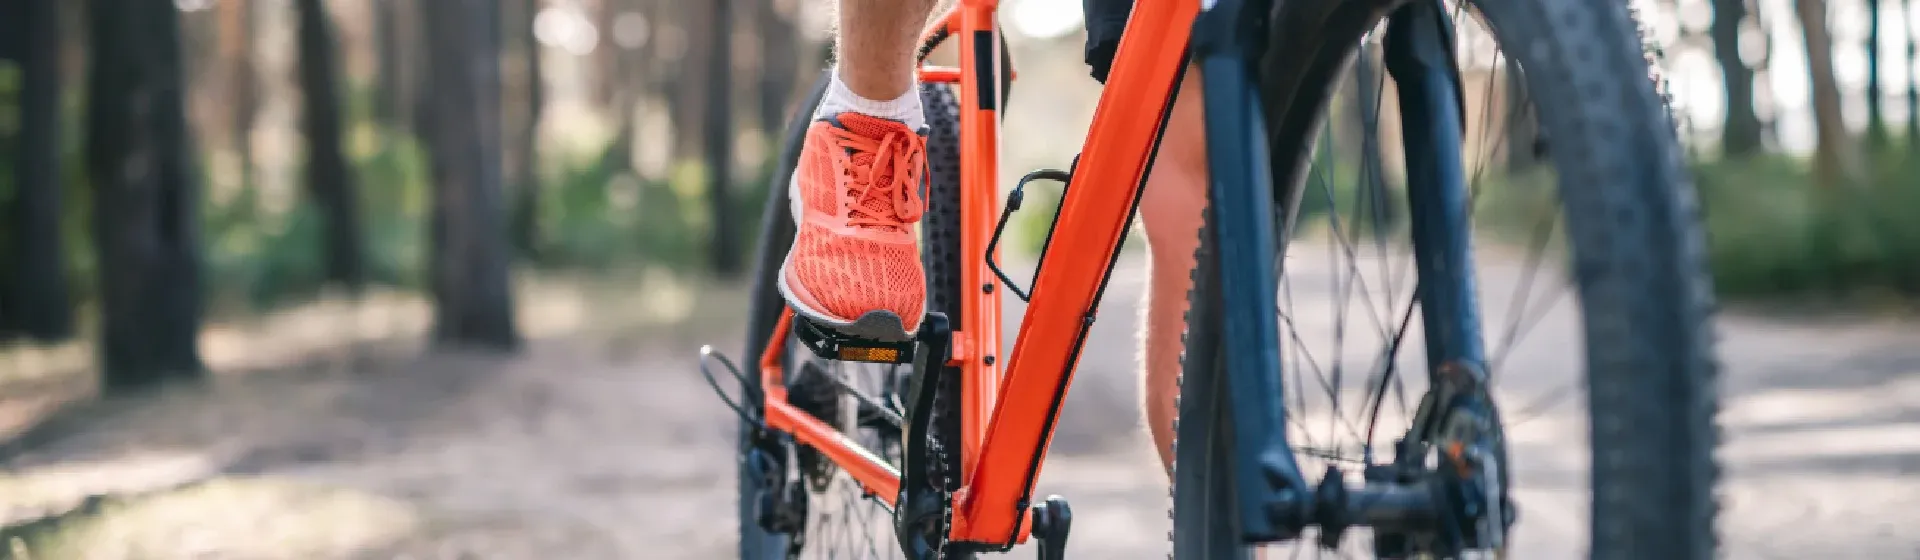 Foto das pernas de pessoa pedalando em cima de uma bicicleta laranja e com uma floresta no fundo